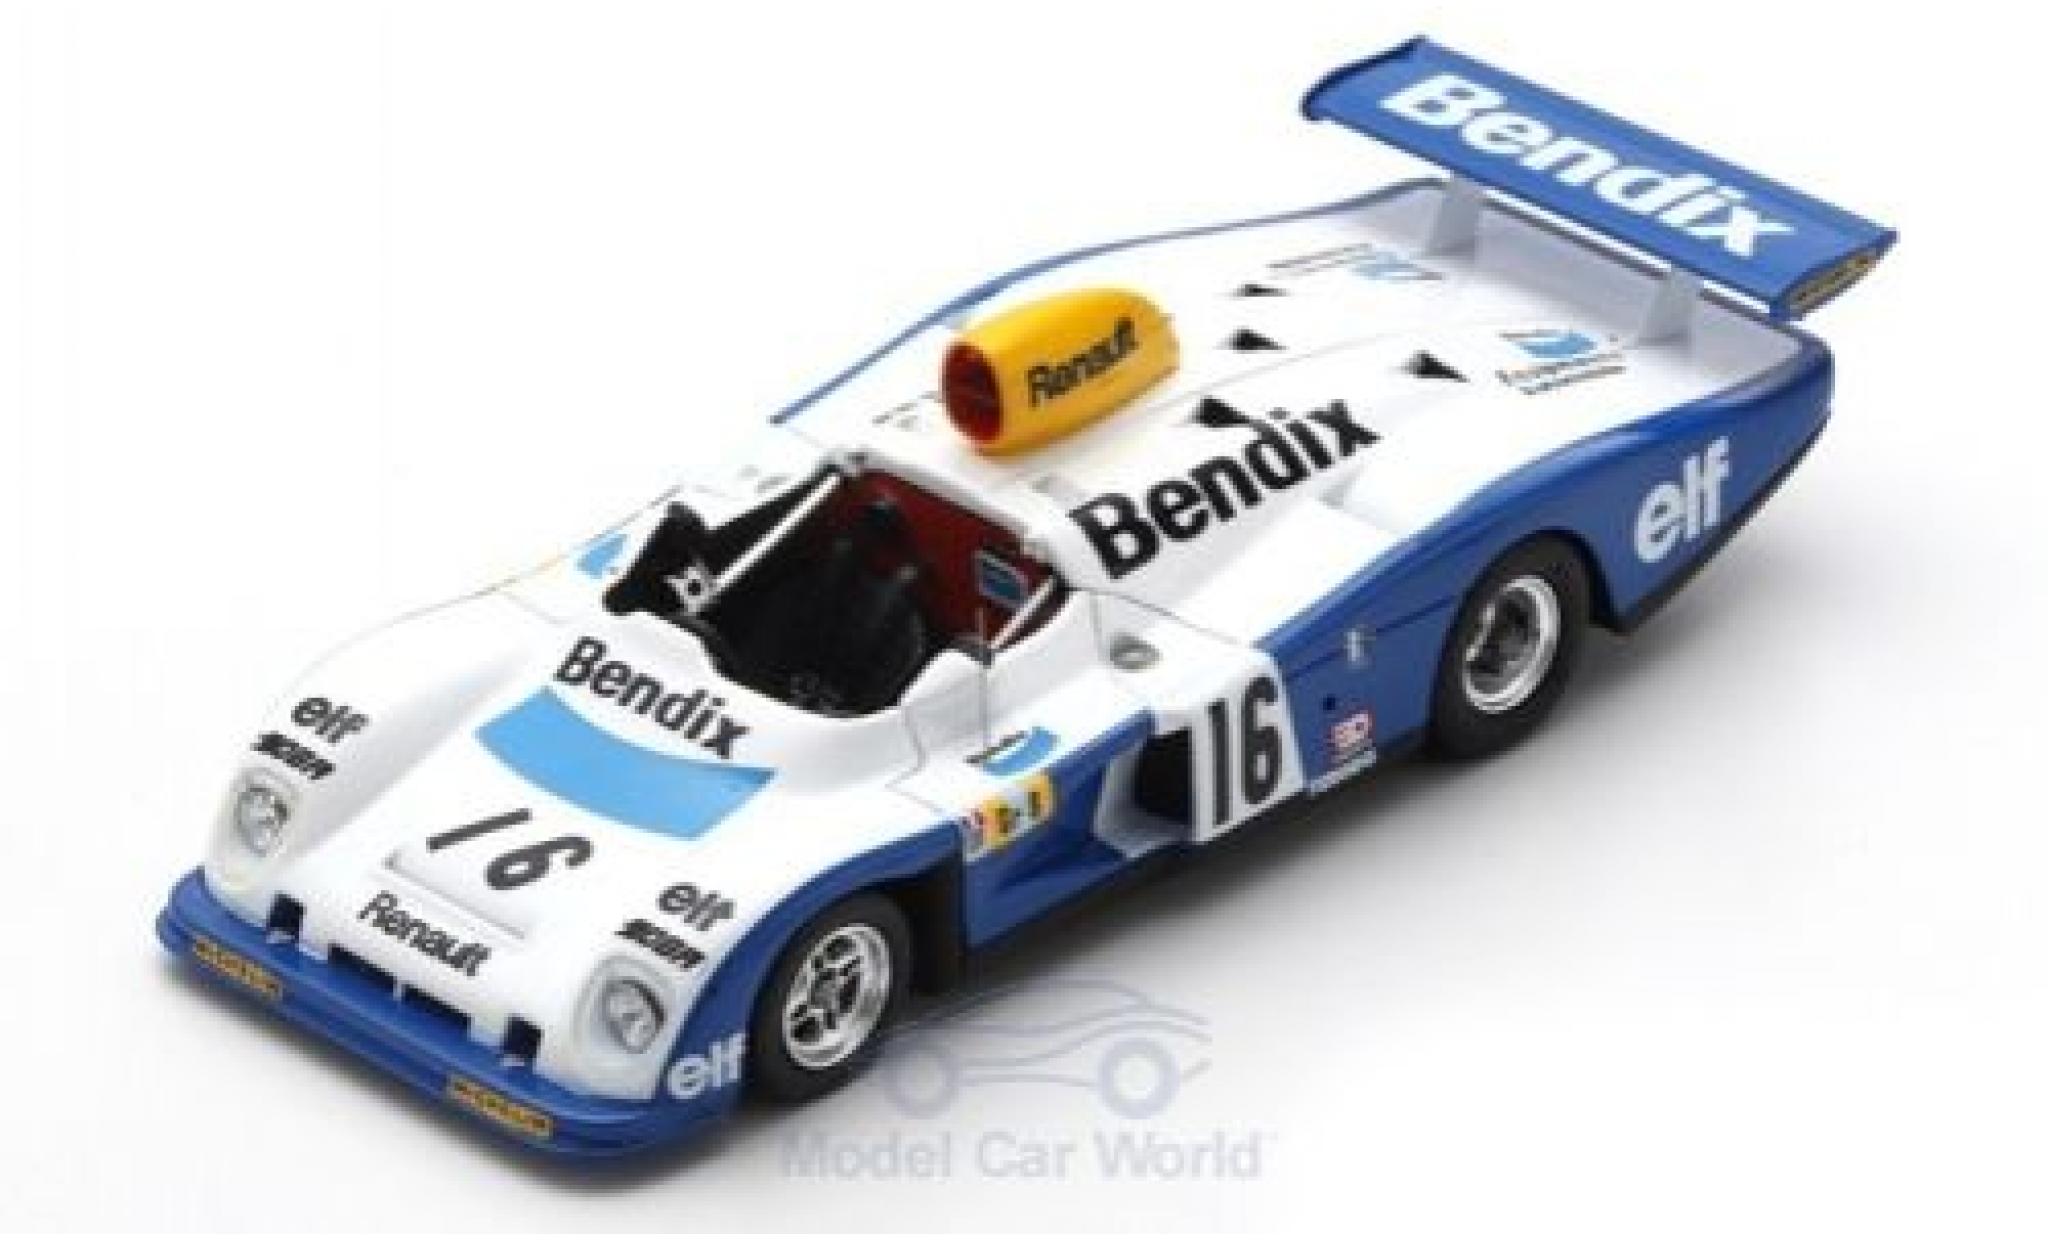 Alpine A442 1/43 Spark Renault RHD No.16 Bendix 24h Le Mans 1977 D.Pironi/R.Arnoux/G.Frequelin